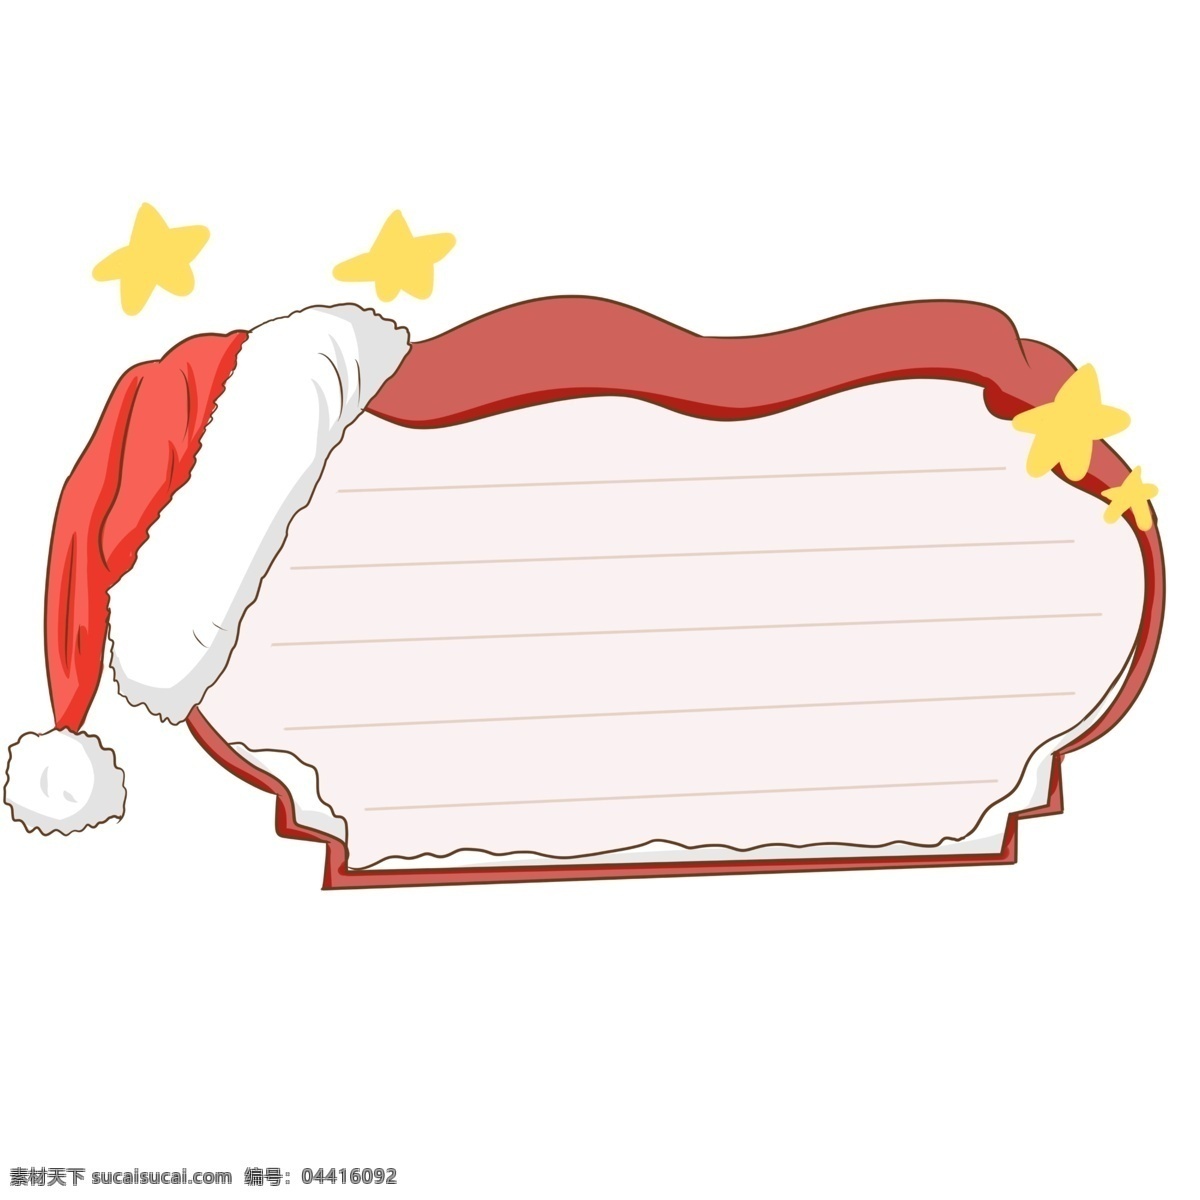 手绘 圣诞节 礼盒 边框 圣诞节边框 愉快的圣诞节 漂亮 全球的圣诞节 创意